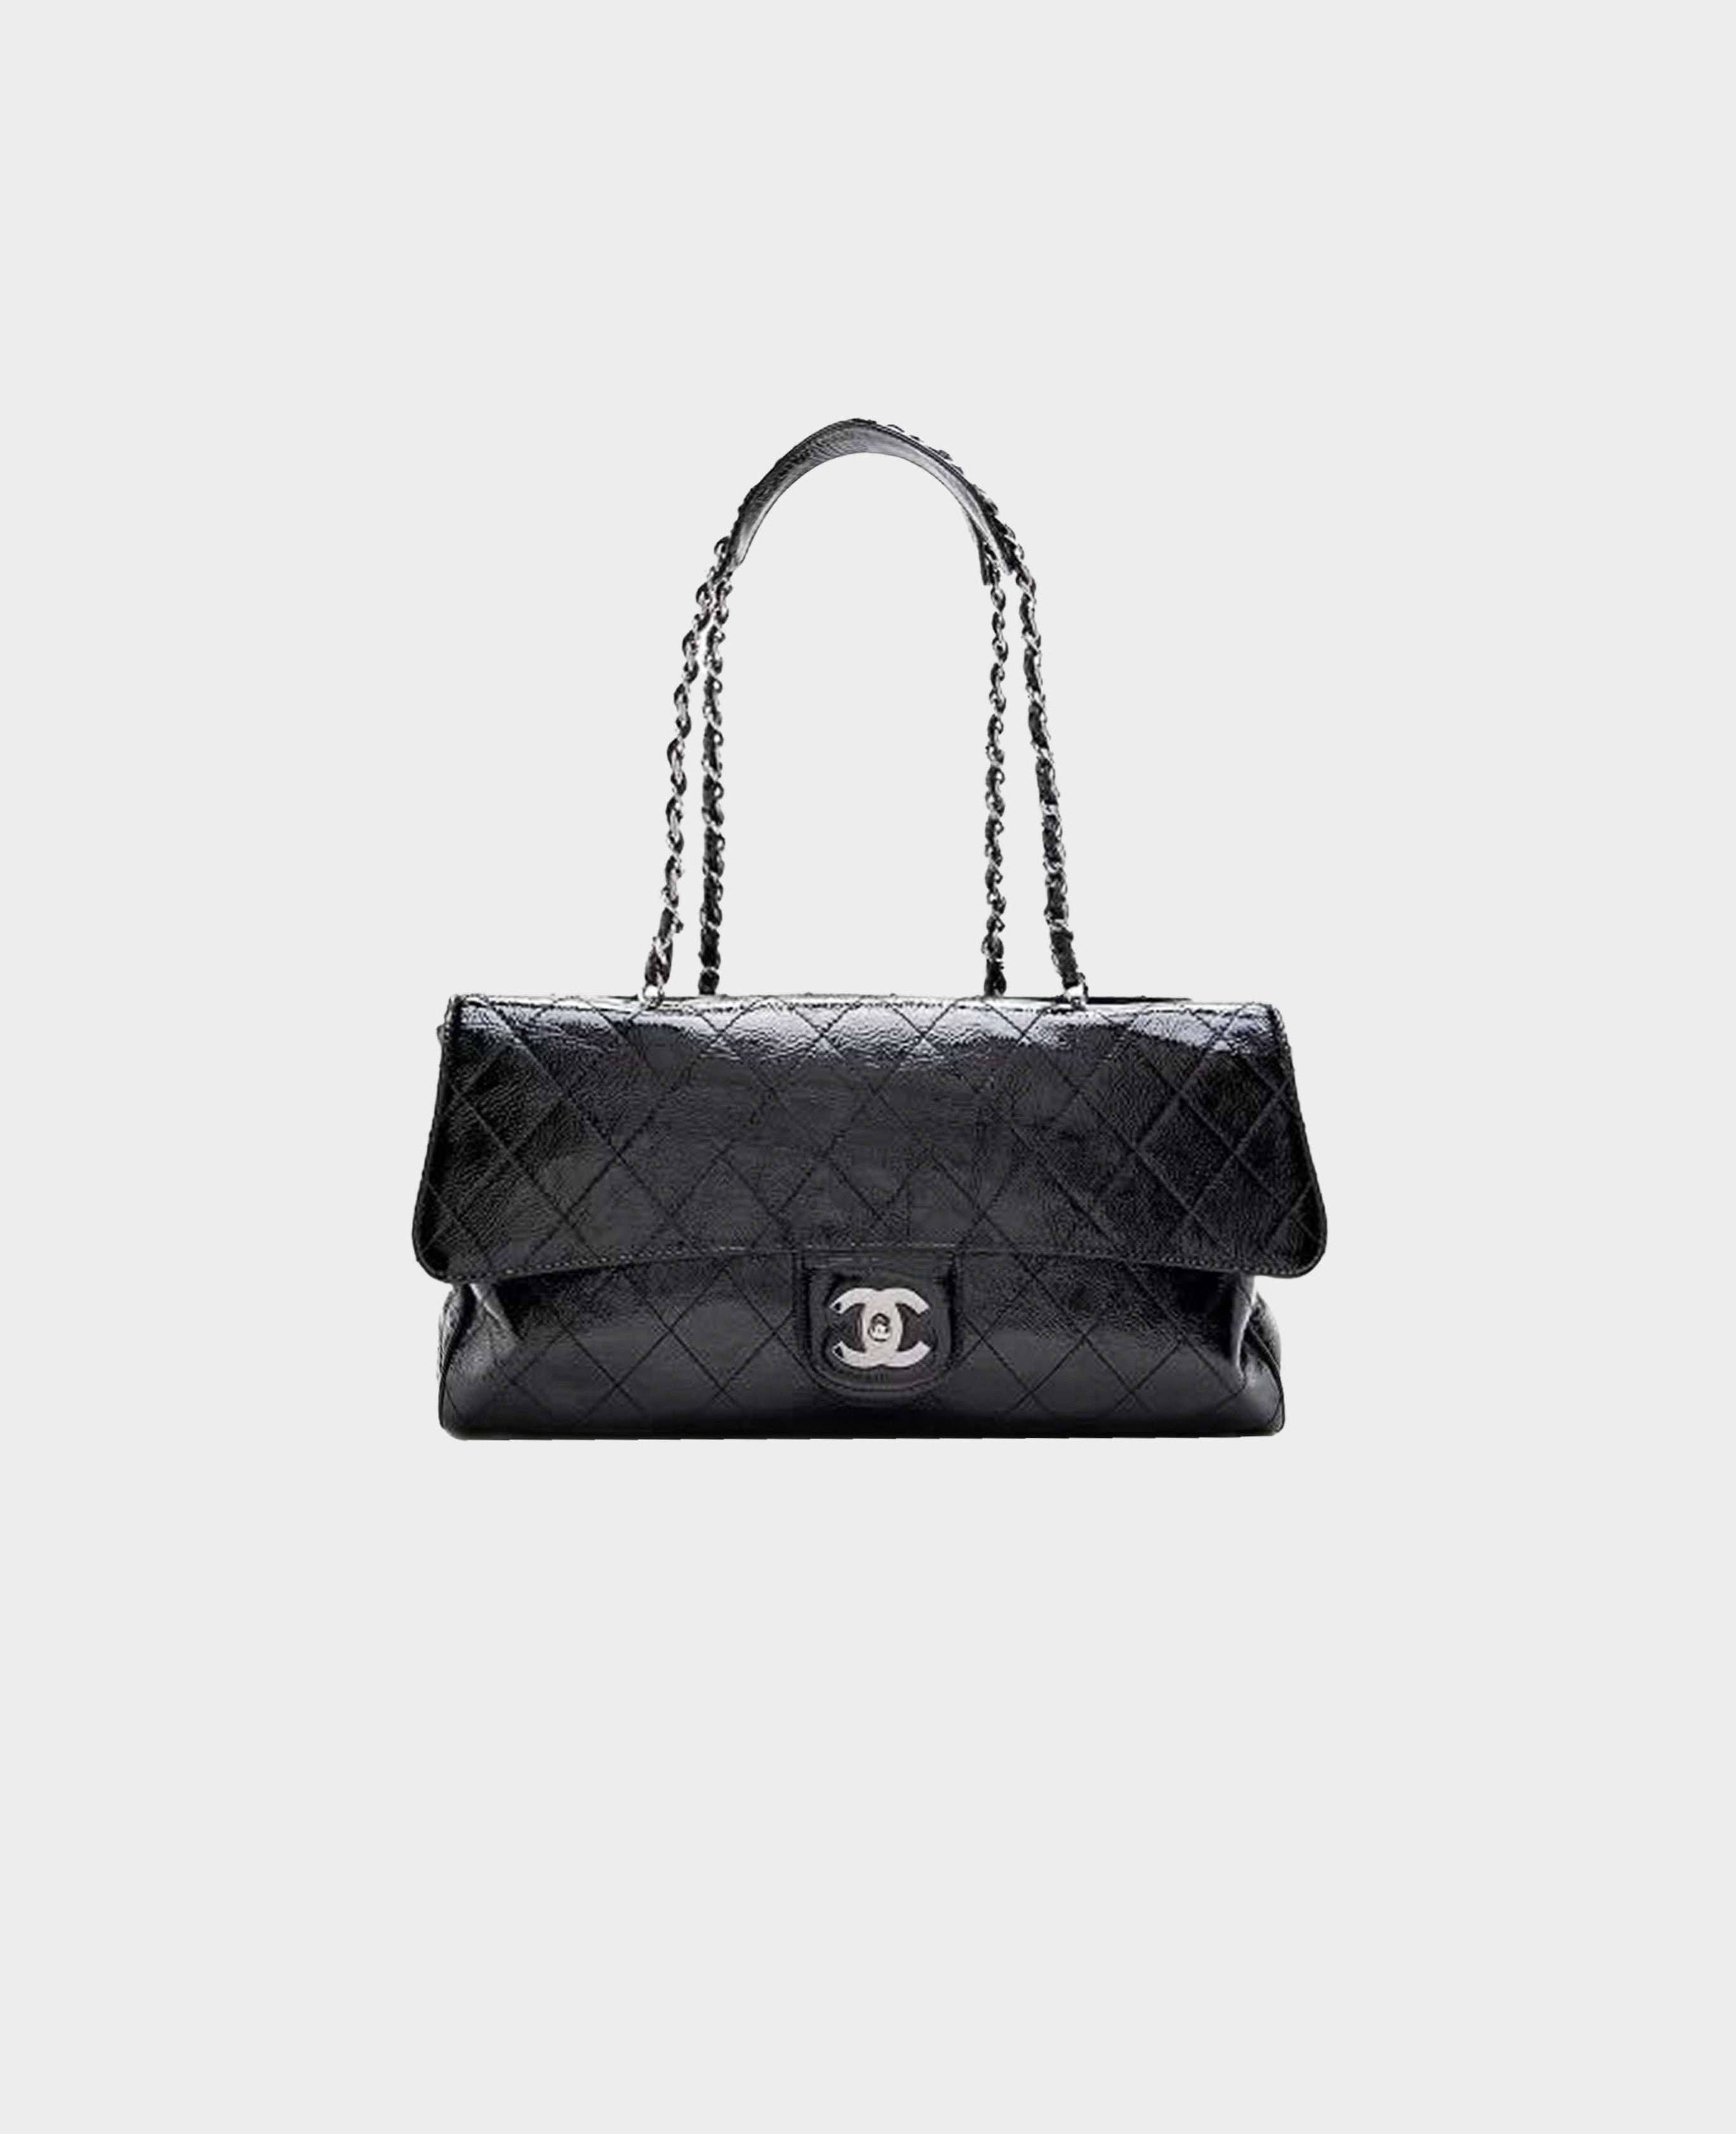 Chanel 2005 Ritz Patent Jumbo Leather Bag